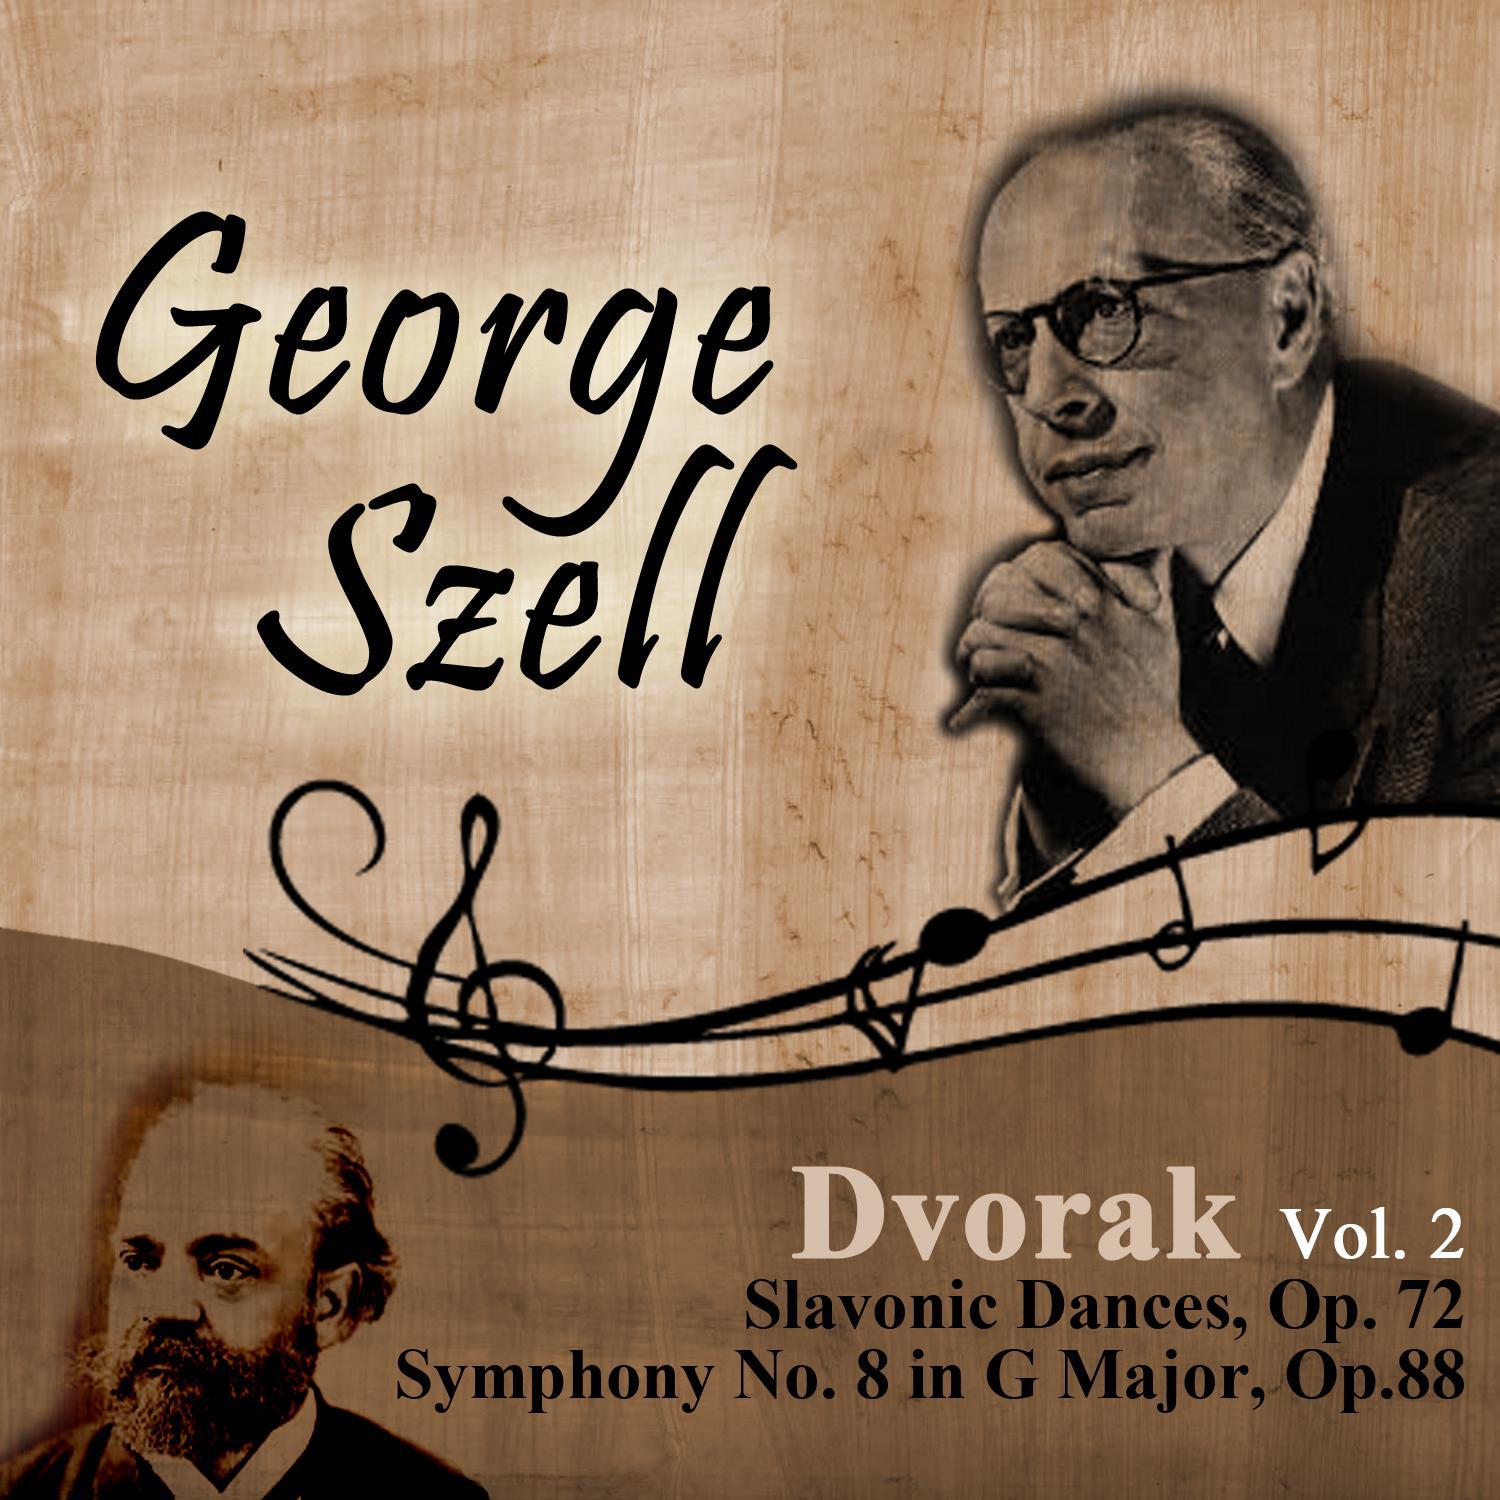 Dvorak, Vol. 2: Slavonic Dances, Op. 72 - Symphony No. 8 in G Major, Op.88